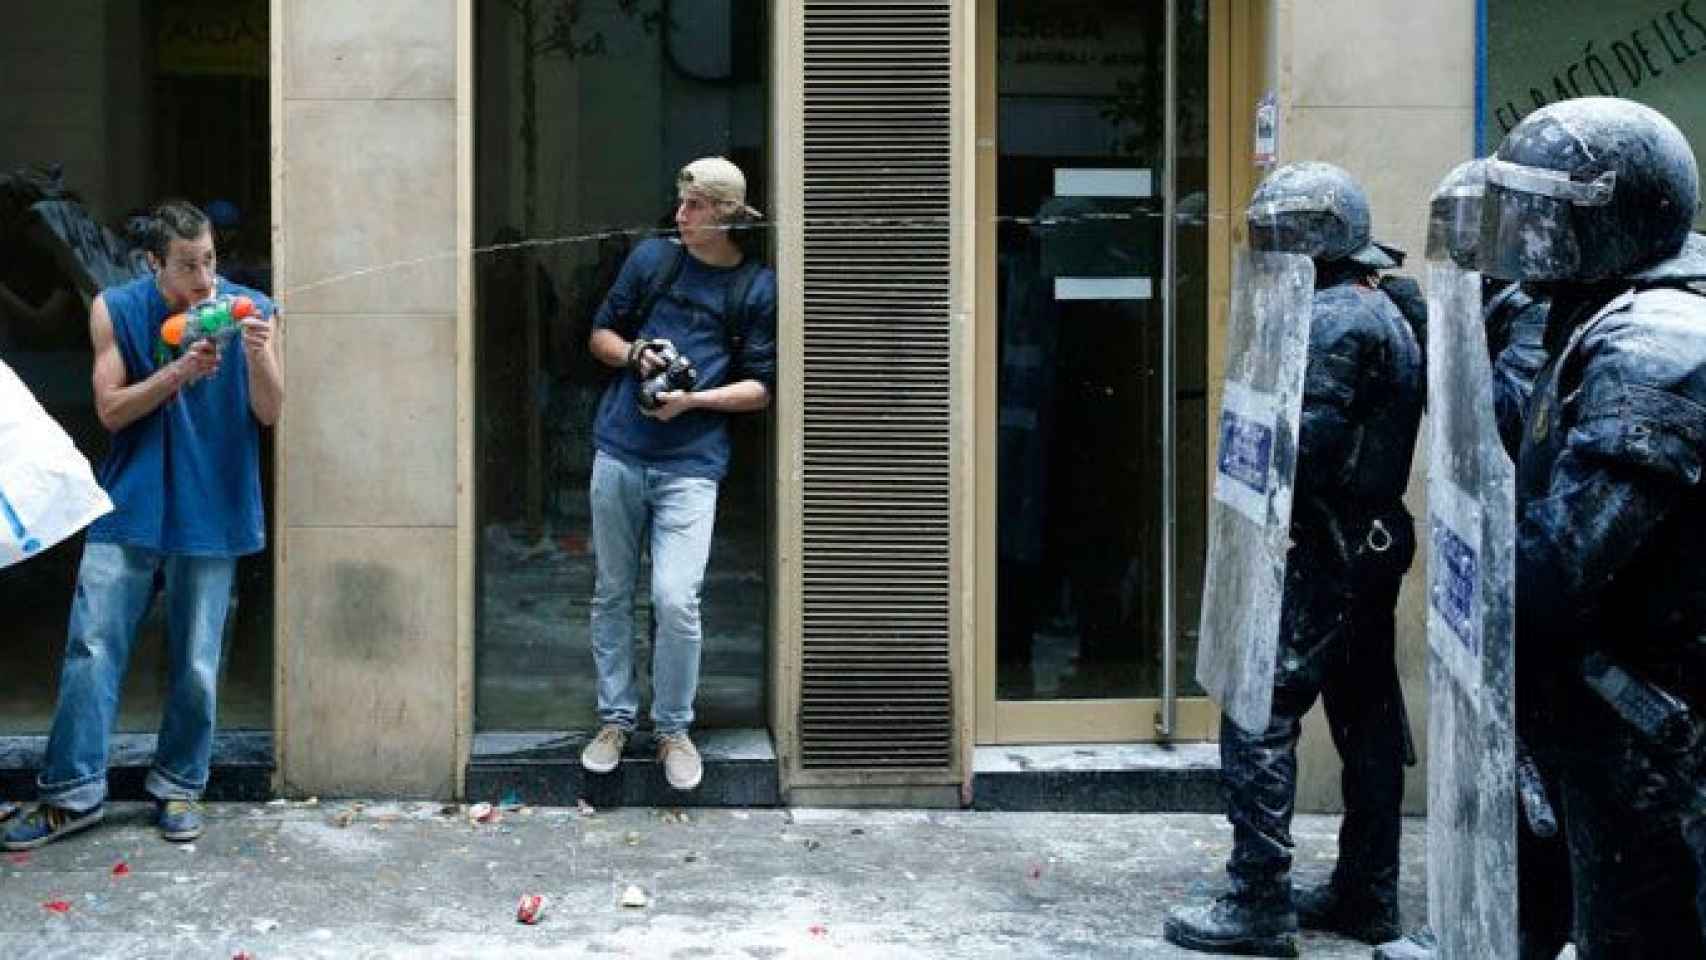 Un okupa dispara con una pistola de agua a varios agentes de los Mossos d'Esquadra en Barcelona, ciudad gobernada por Colau, quien bloquea la oficina antiokupas / EFE